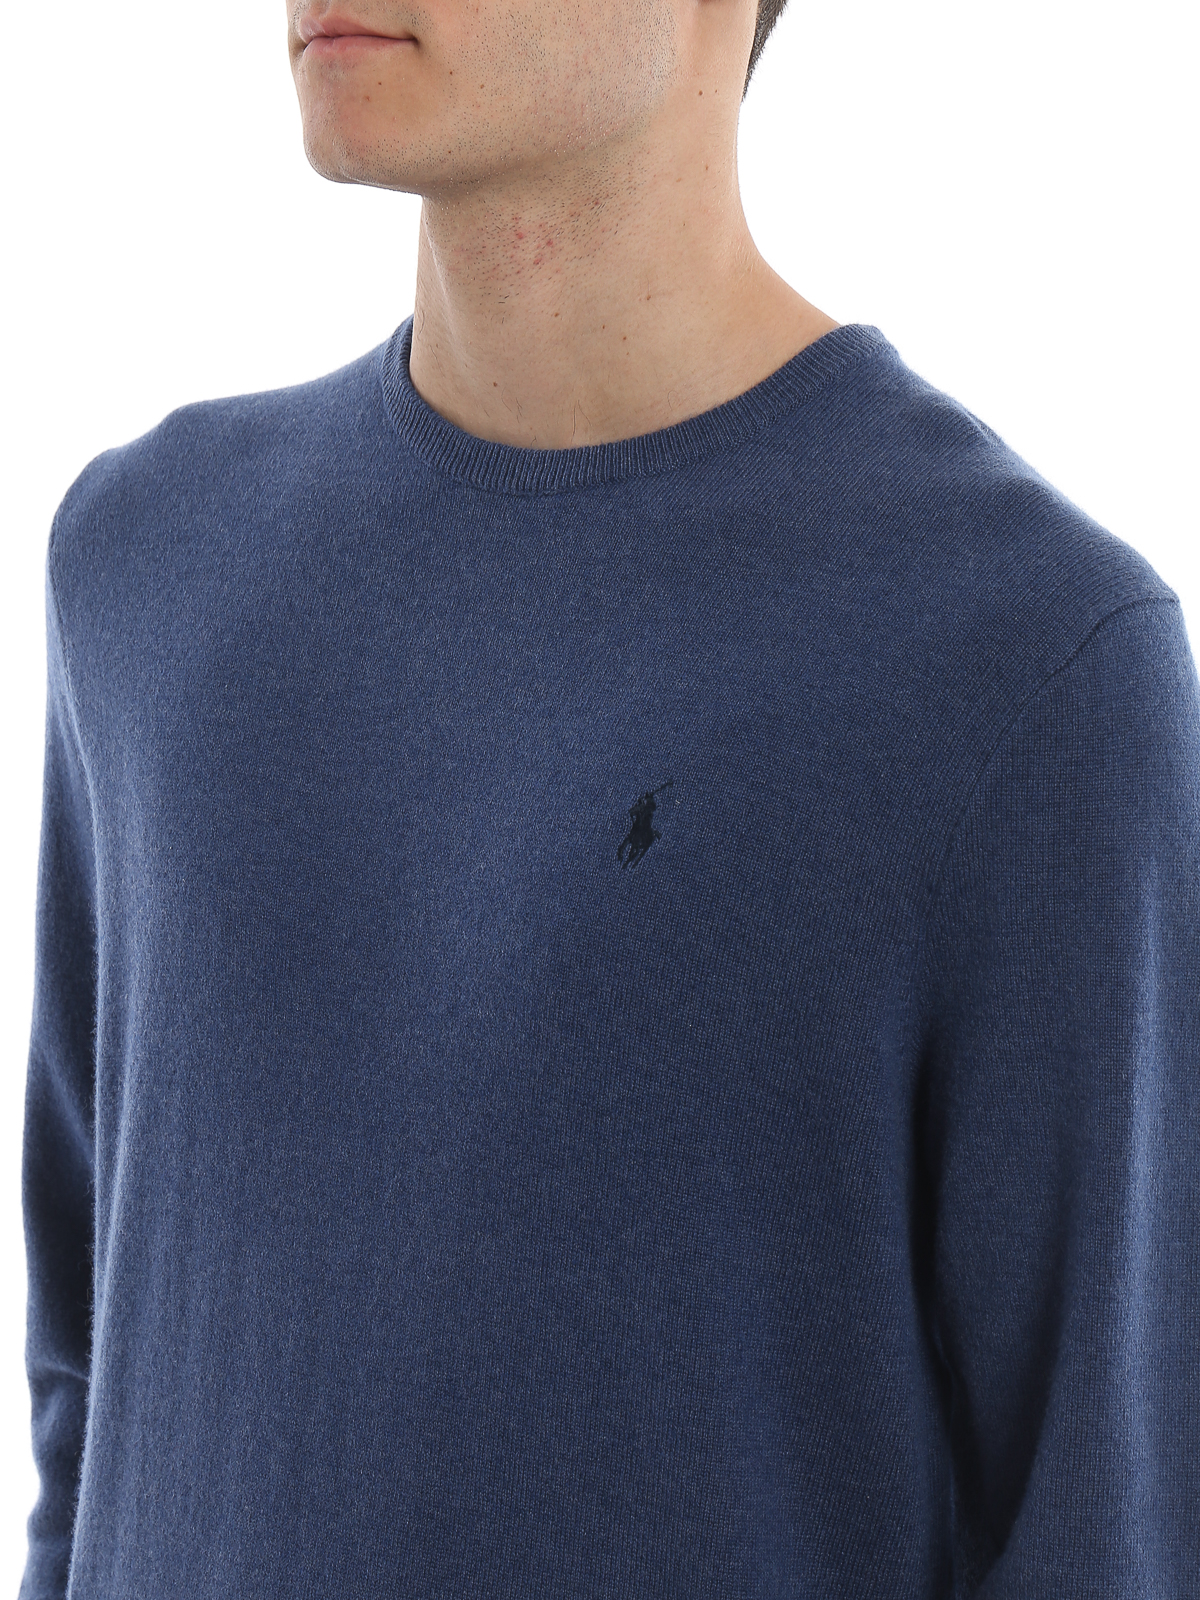 crew neck sweater polo